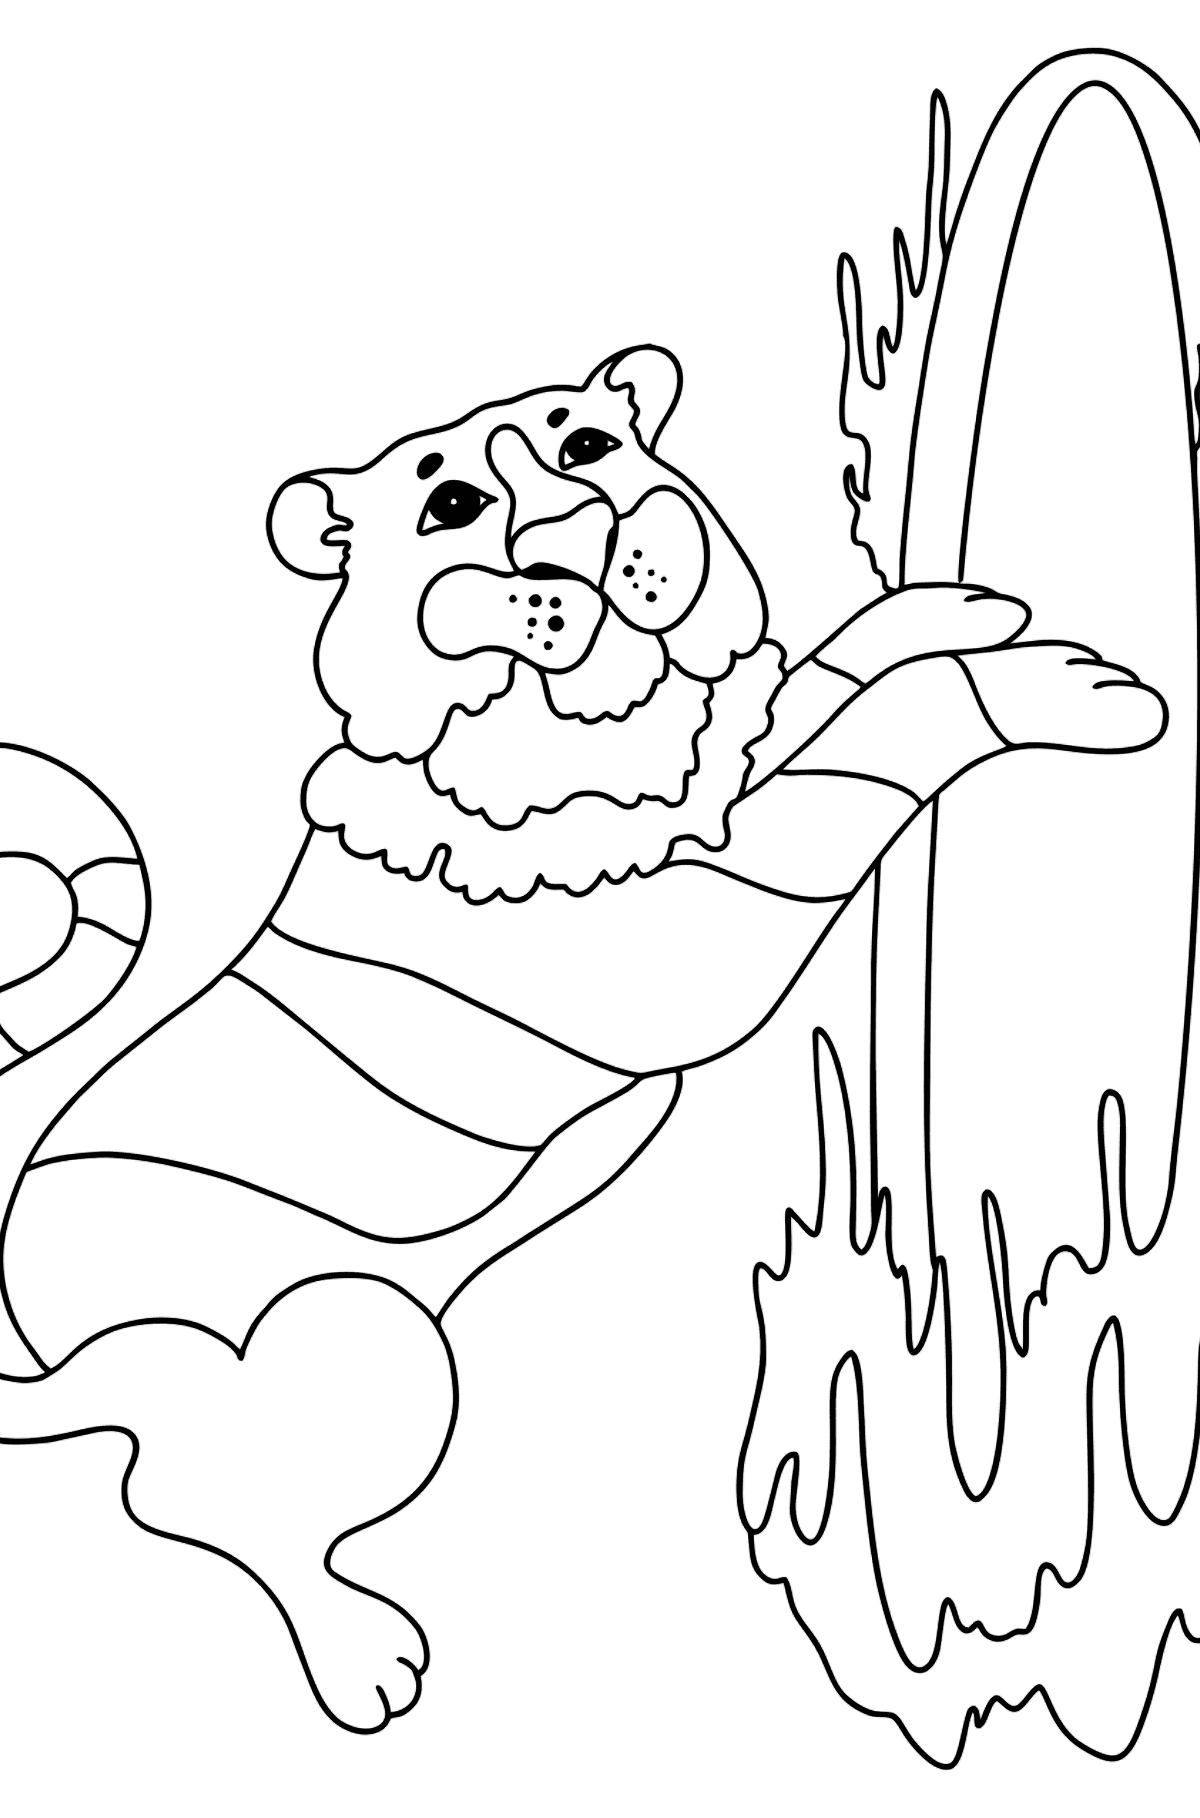 Tegning til fargelegging tiger i sirkuset (vanskelig) - Tegninger til fargelegging for barn